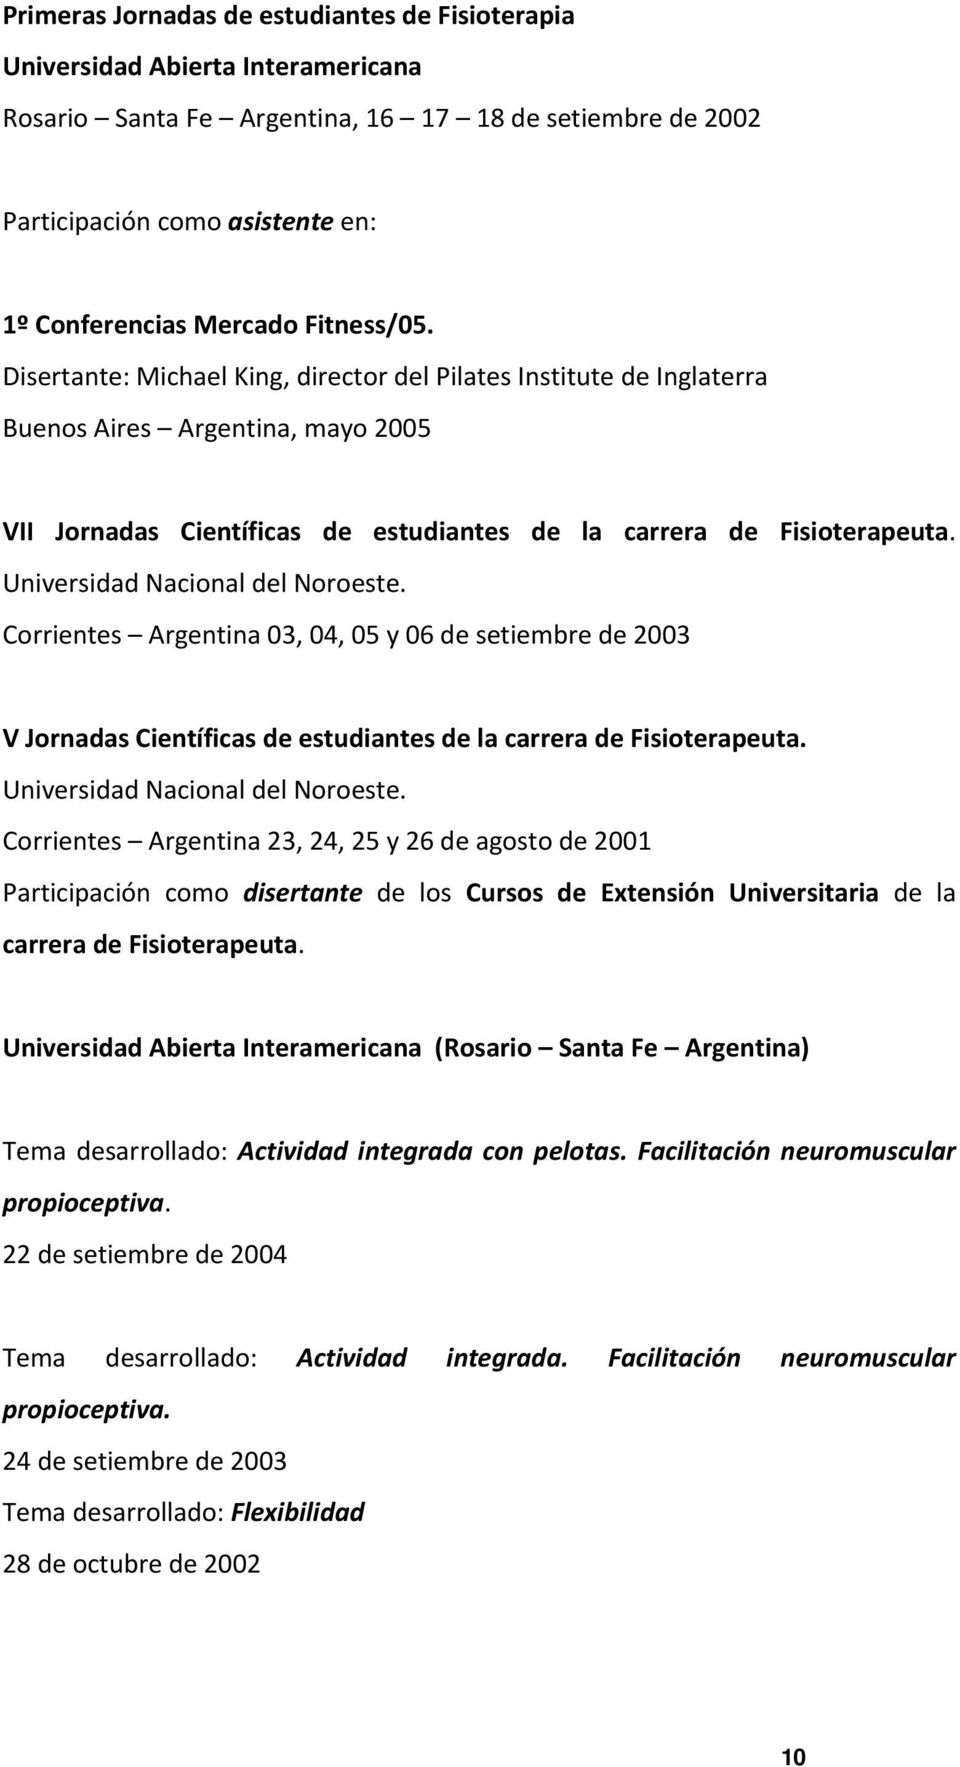 Universidad Nacional del Noroeste. Corrientes Argentina 03, 04, 05 y 06 de setiembre de 2003 V Jornadas Científicas de estudiantes de la carrera de Fisioterapeuta. Universidad Nacional del Noroeste.